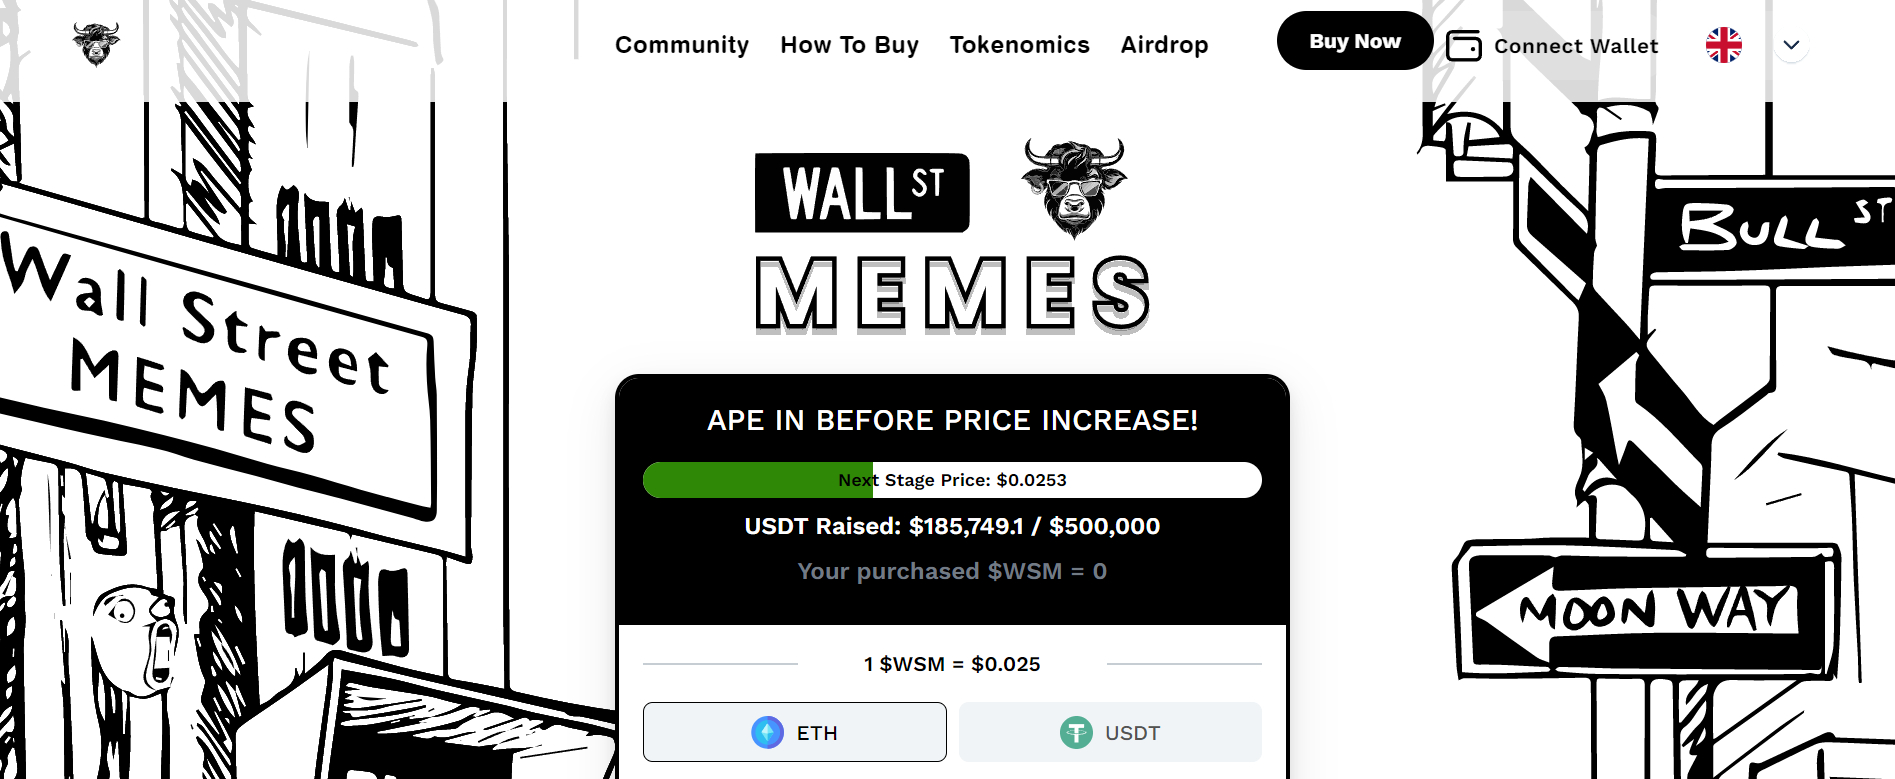 Wall Street Memes Beste Kleine Crypto met Potentie